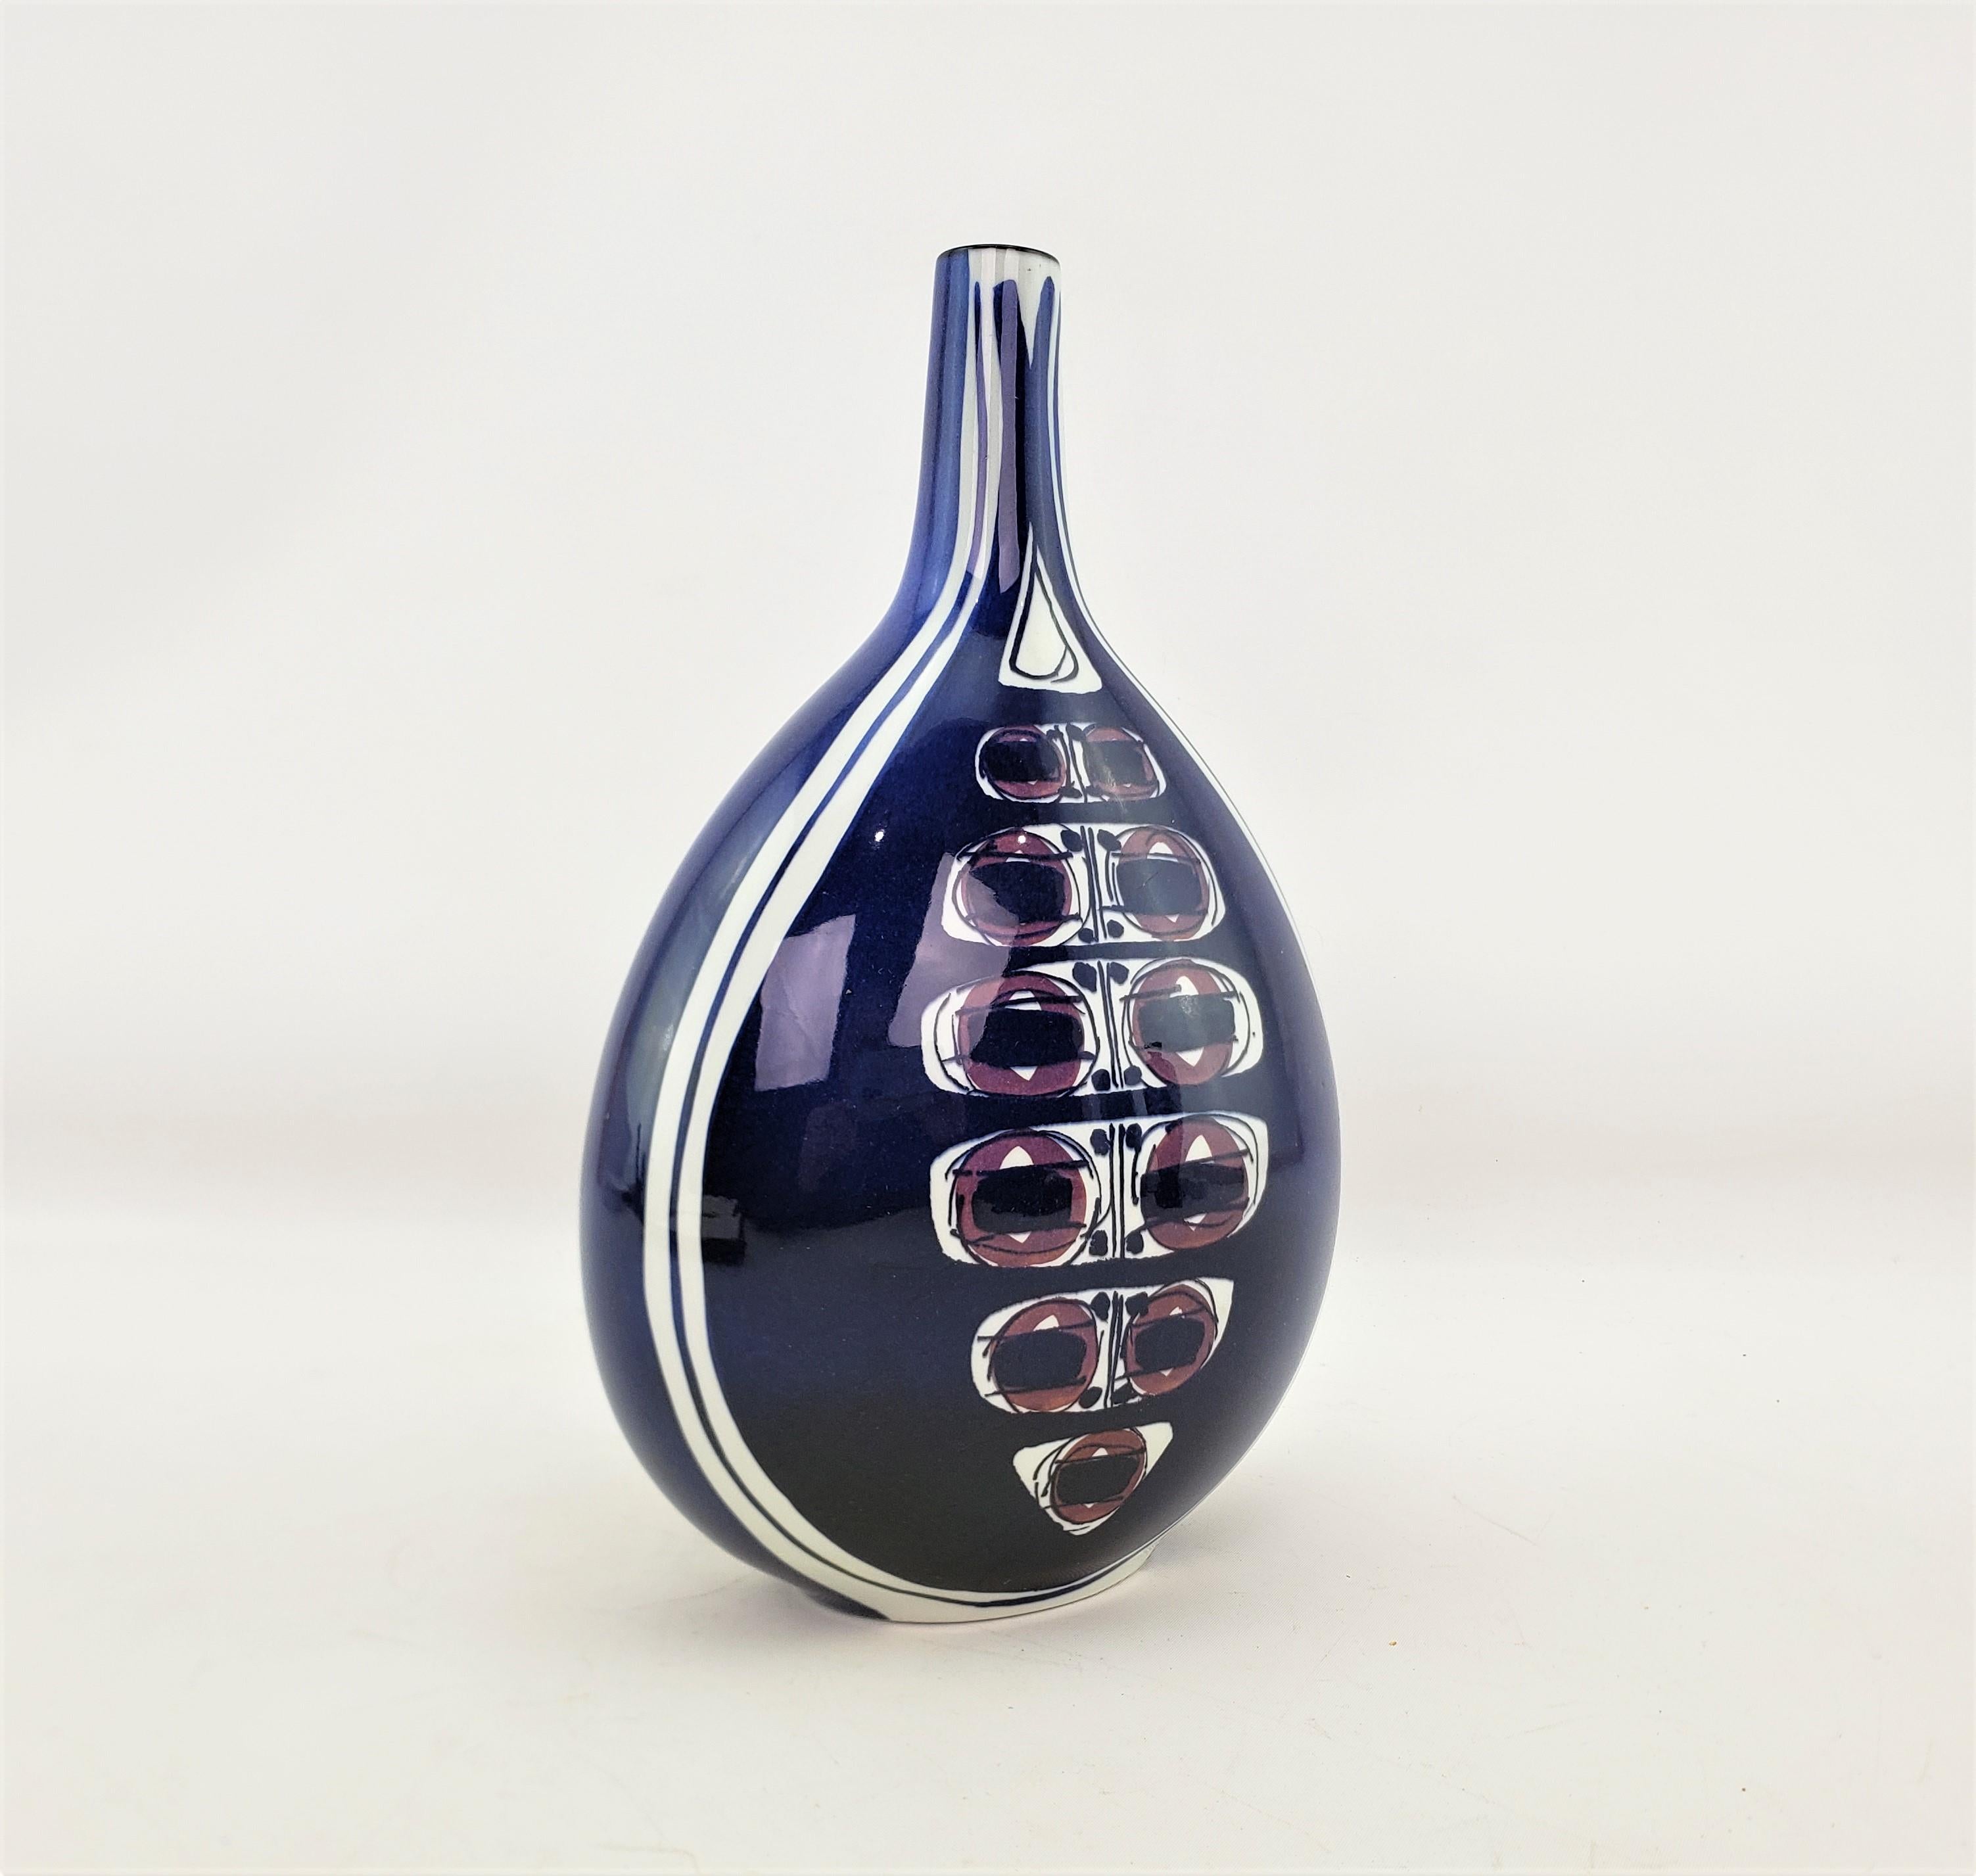 Pottery Royal Copenhagen Mid-Century Modern Bottle Vase by Inge-Lise Koefoed For Sale